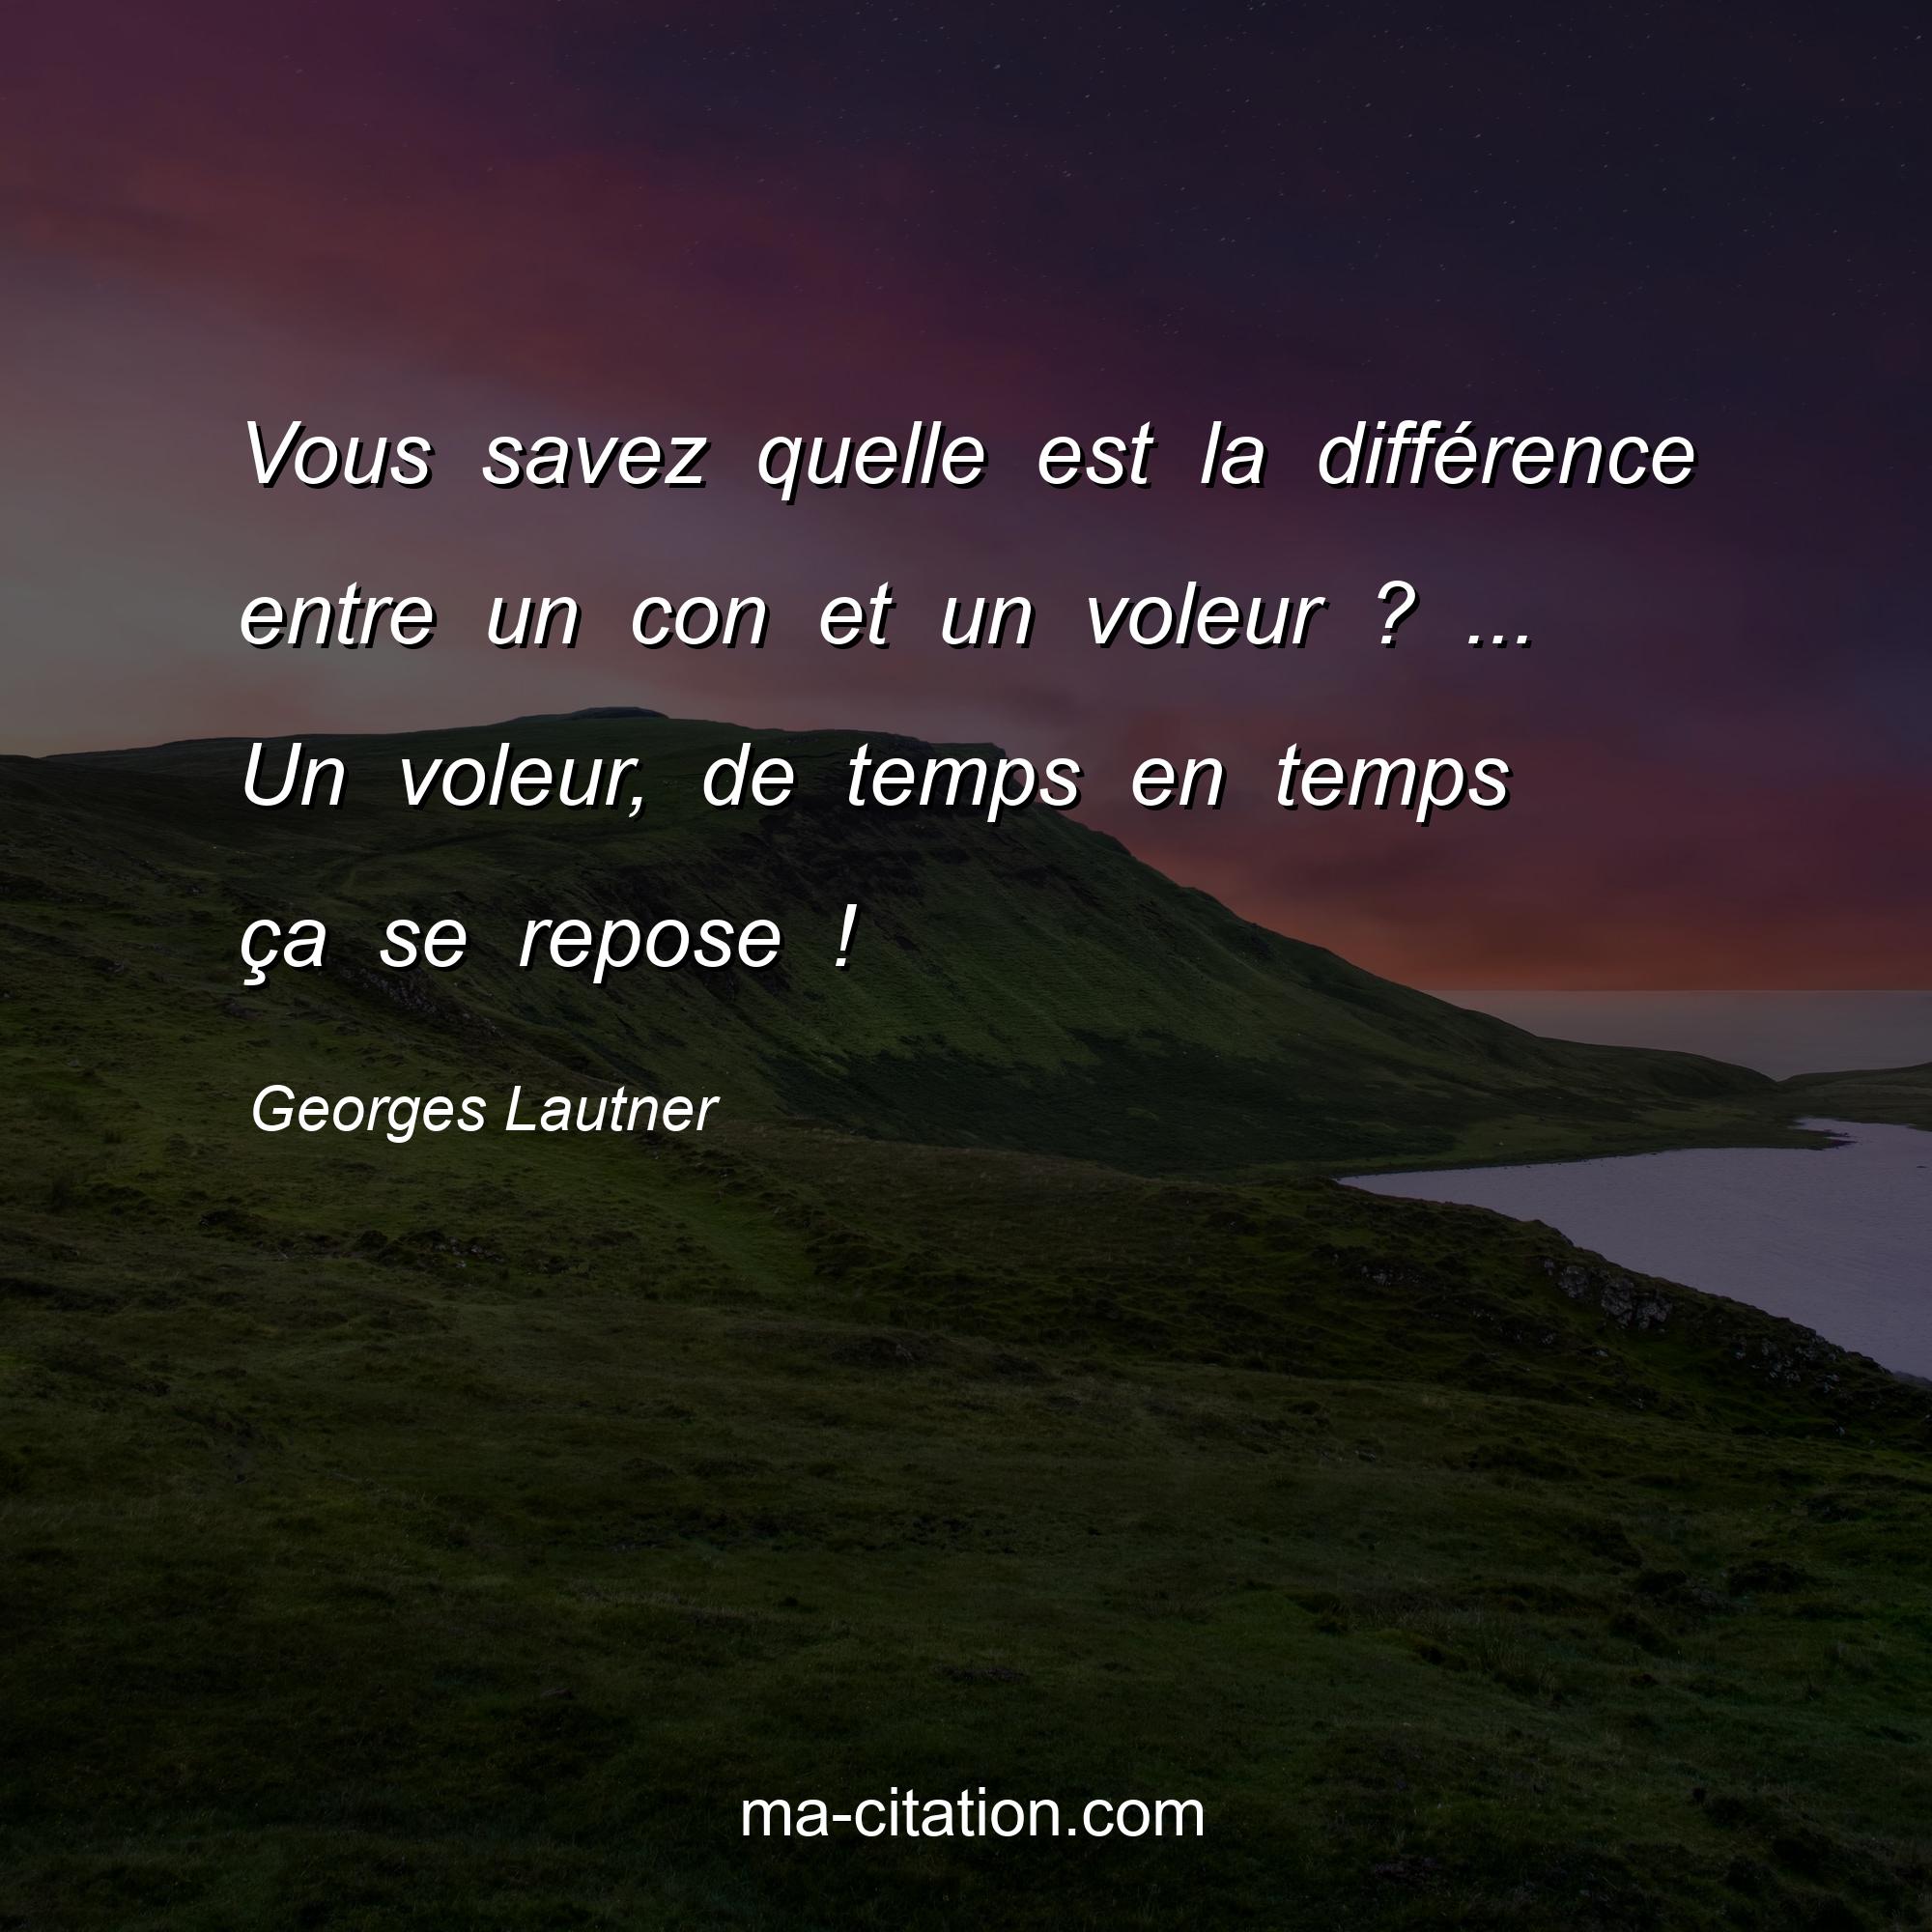 Georges Lautner : Vous savez quelle est la différence entre un con et un voleur ? ... Un voleur, de temps en temps ça se repose !